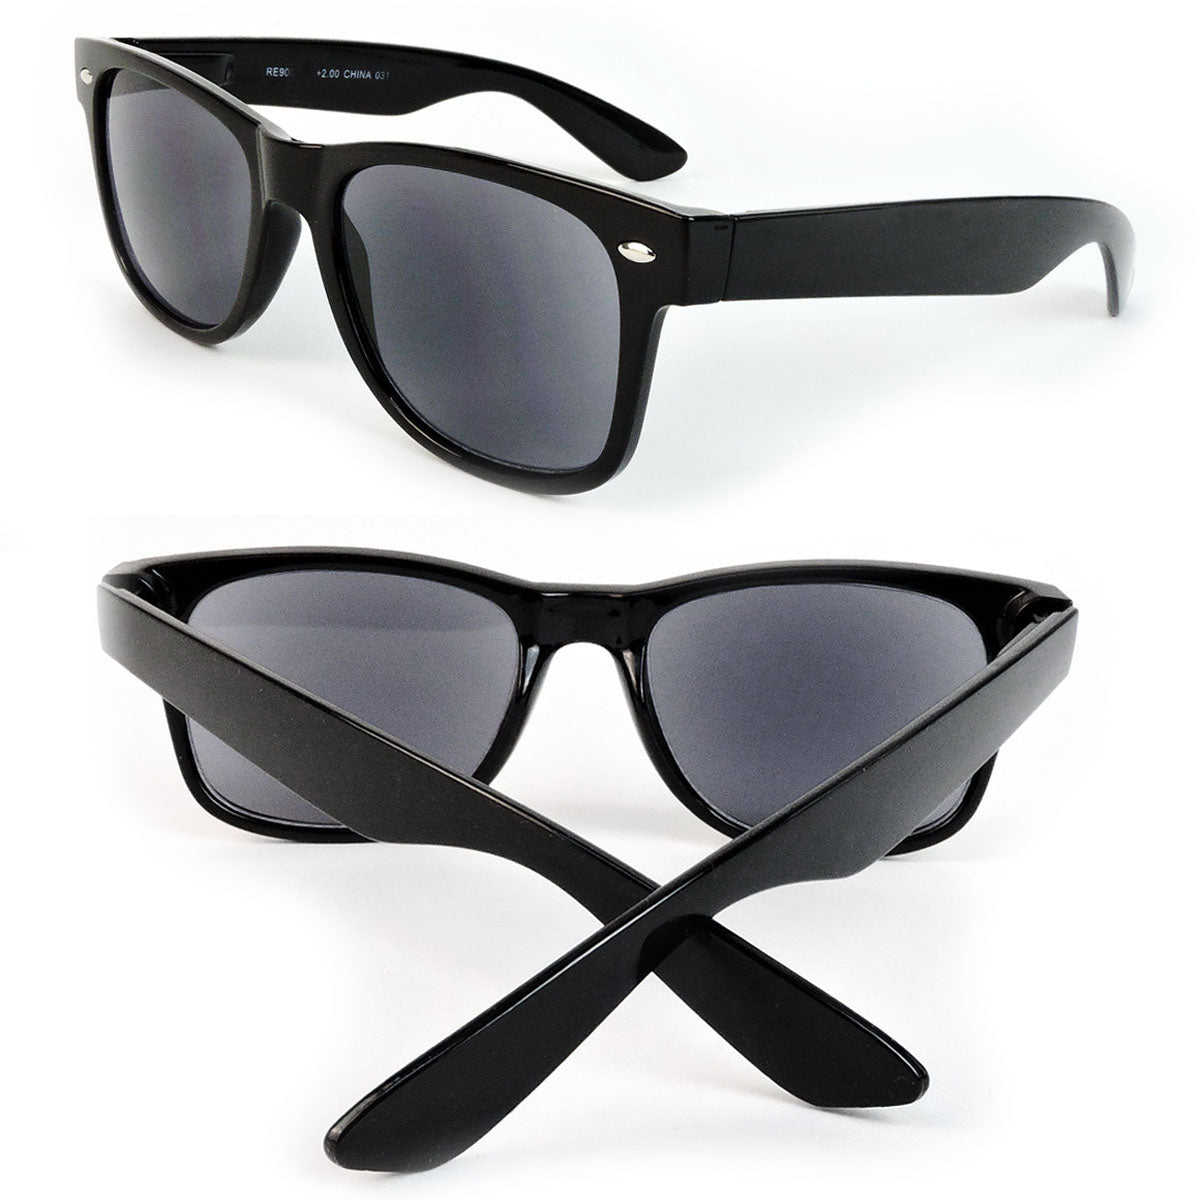 Sun Readers Full Lens Classic Frame 80's Retro Style Reading Sunglasses - Black, +2.00